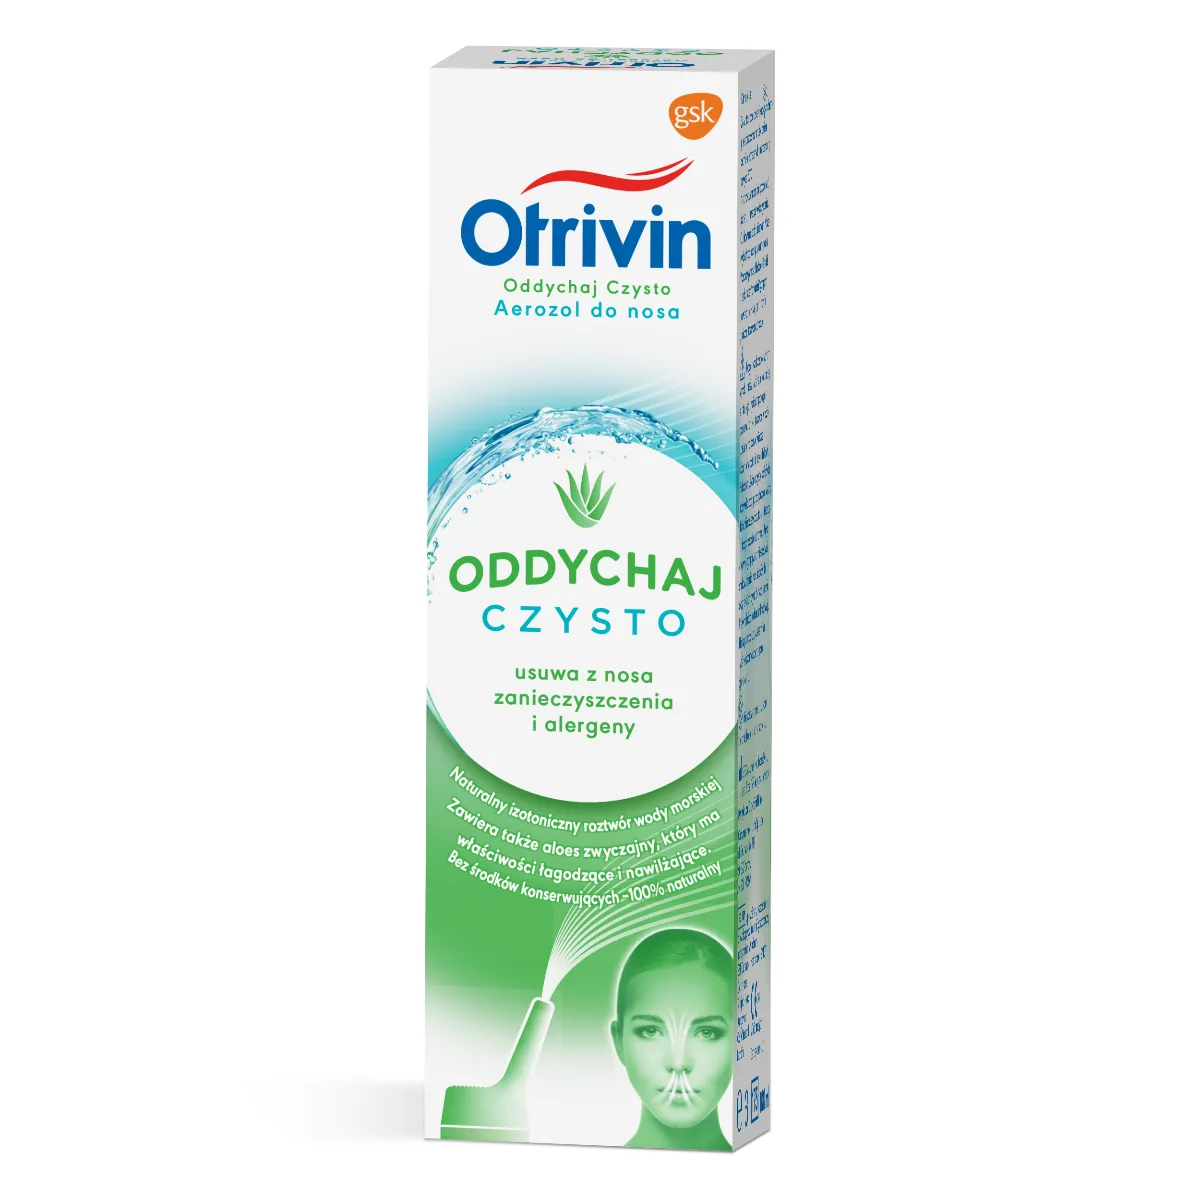 Otrivin Oddychaj Czysto dla dorosłych Aerozol 100% naturalny z ekstraktem z aloesu, 100 ml 